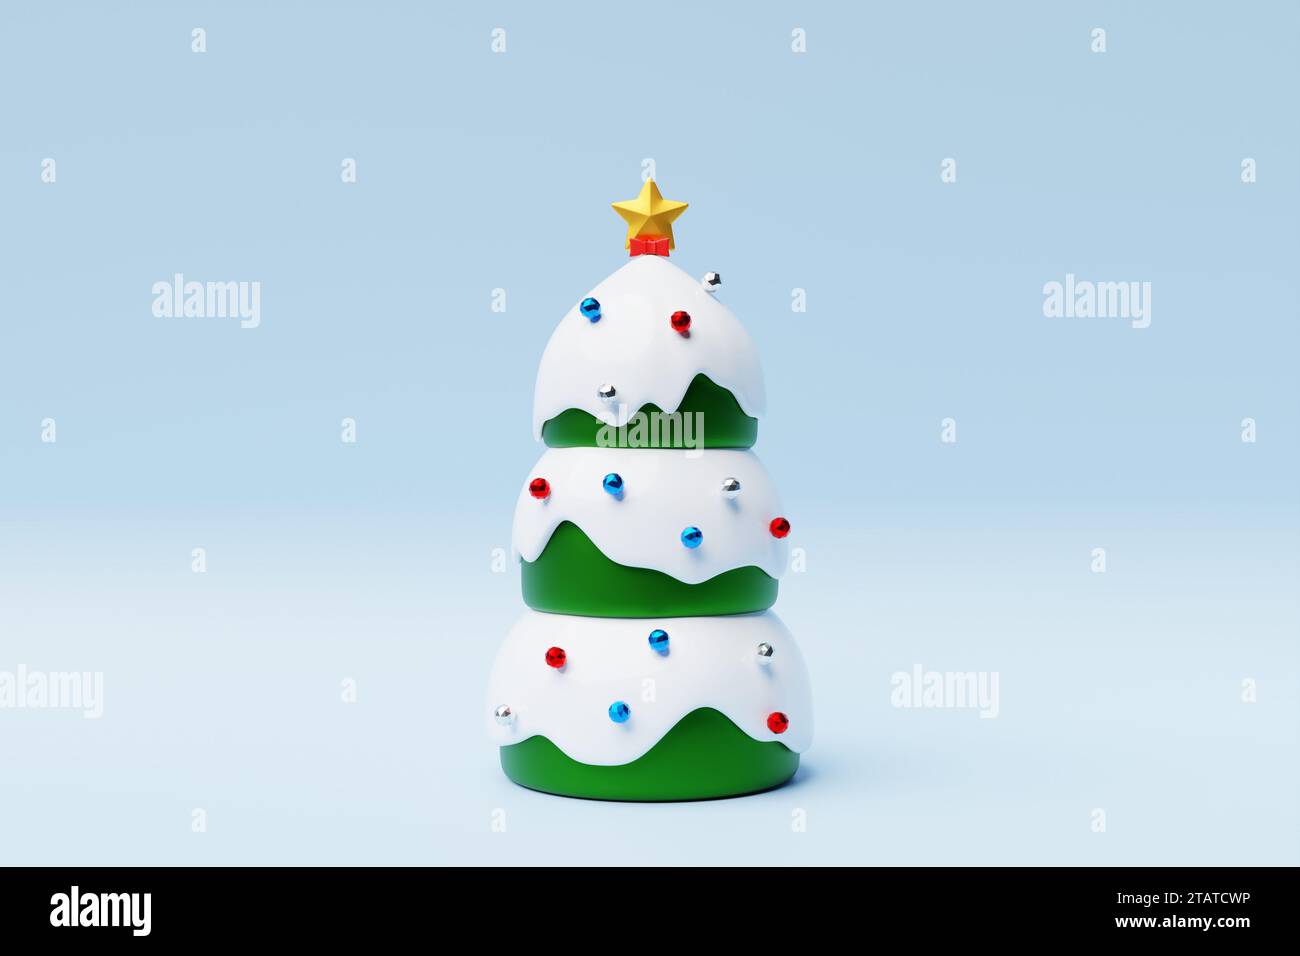 Ilustración 3d de un árbol de Navidad sobre un fondo azul. Objeto de Navidad festiva. Foto de stock